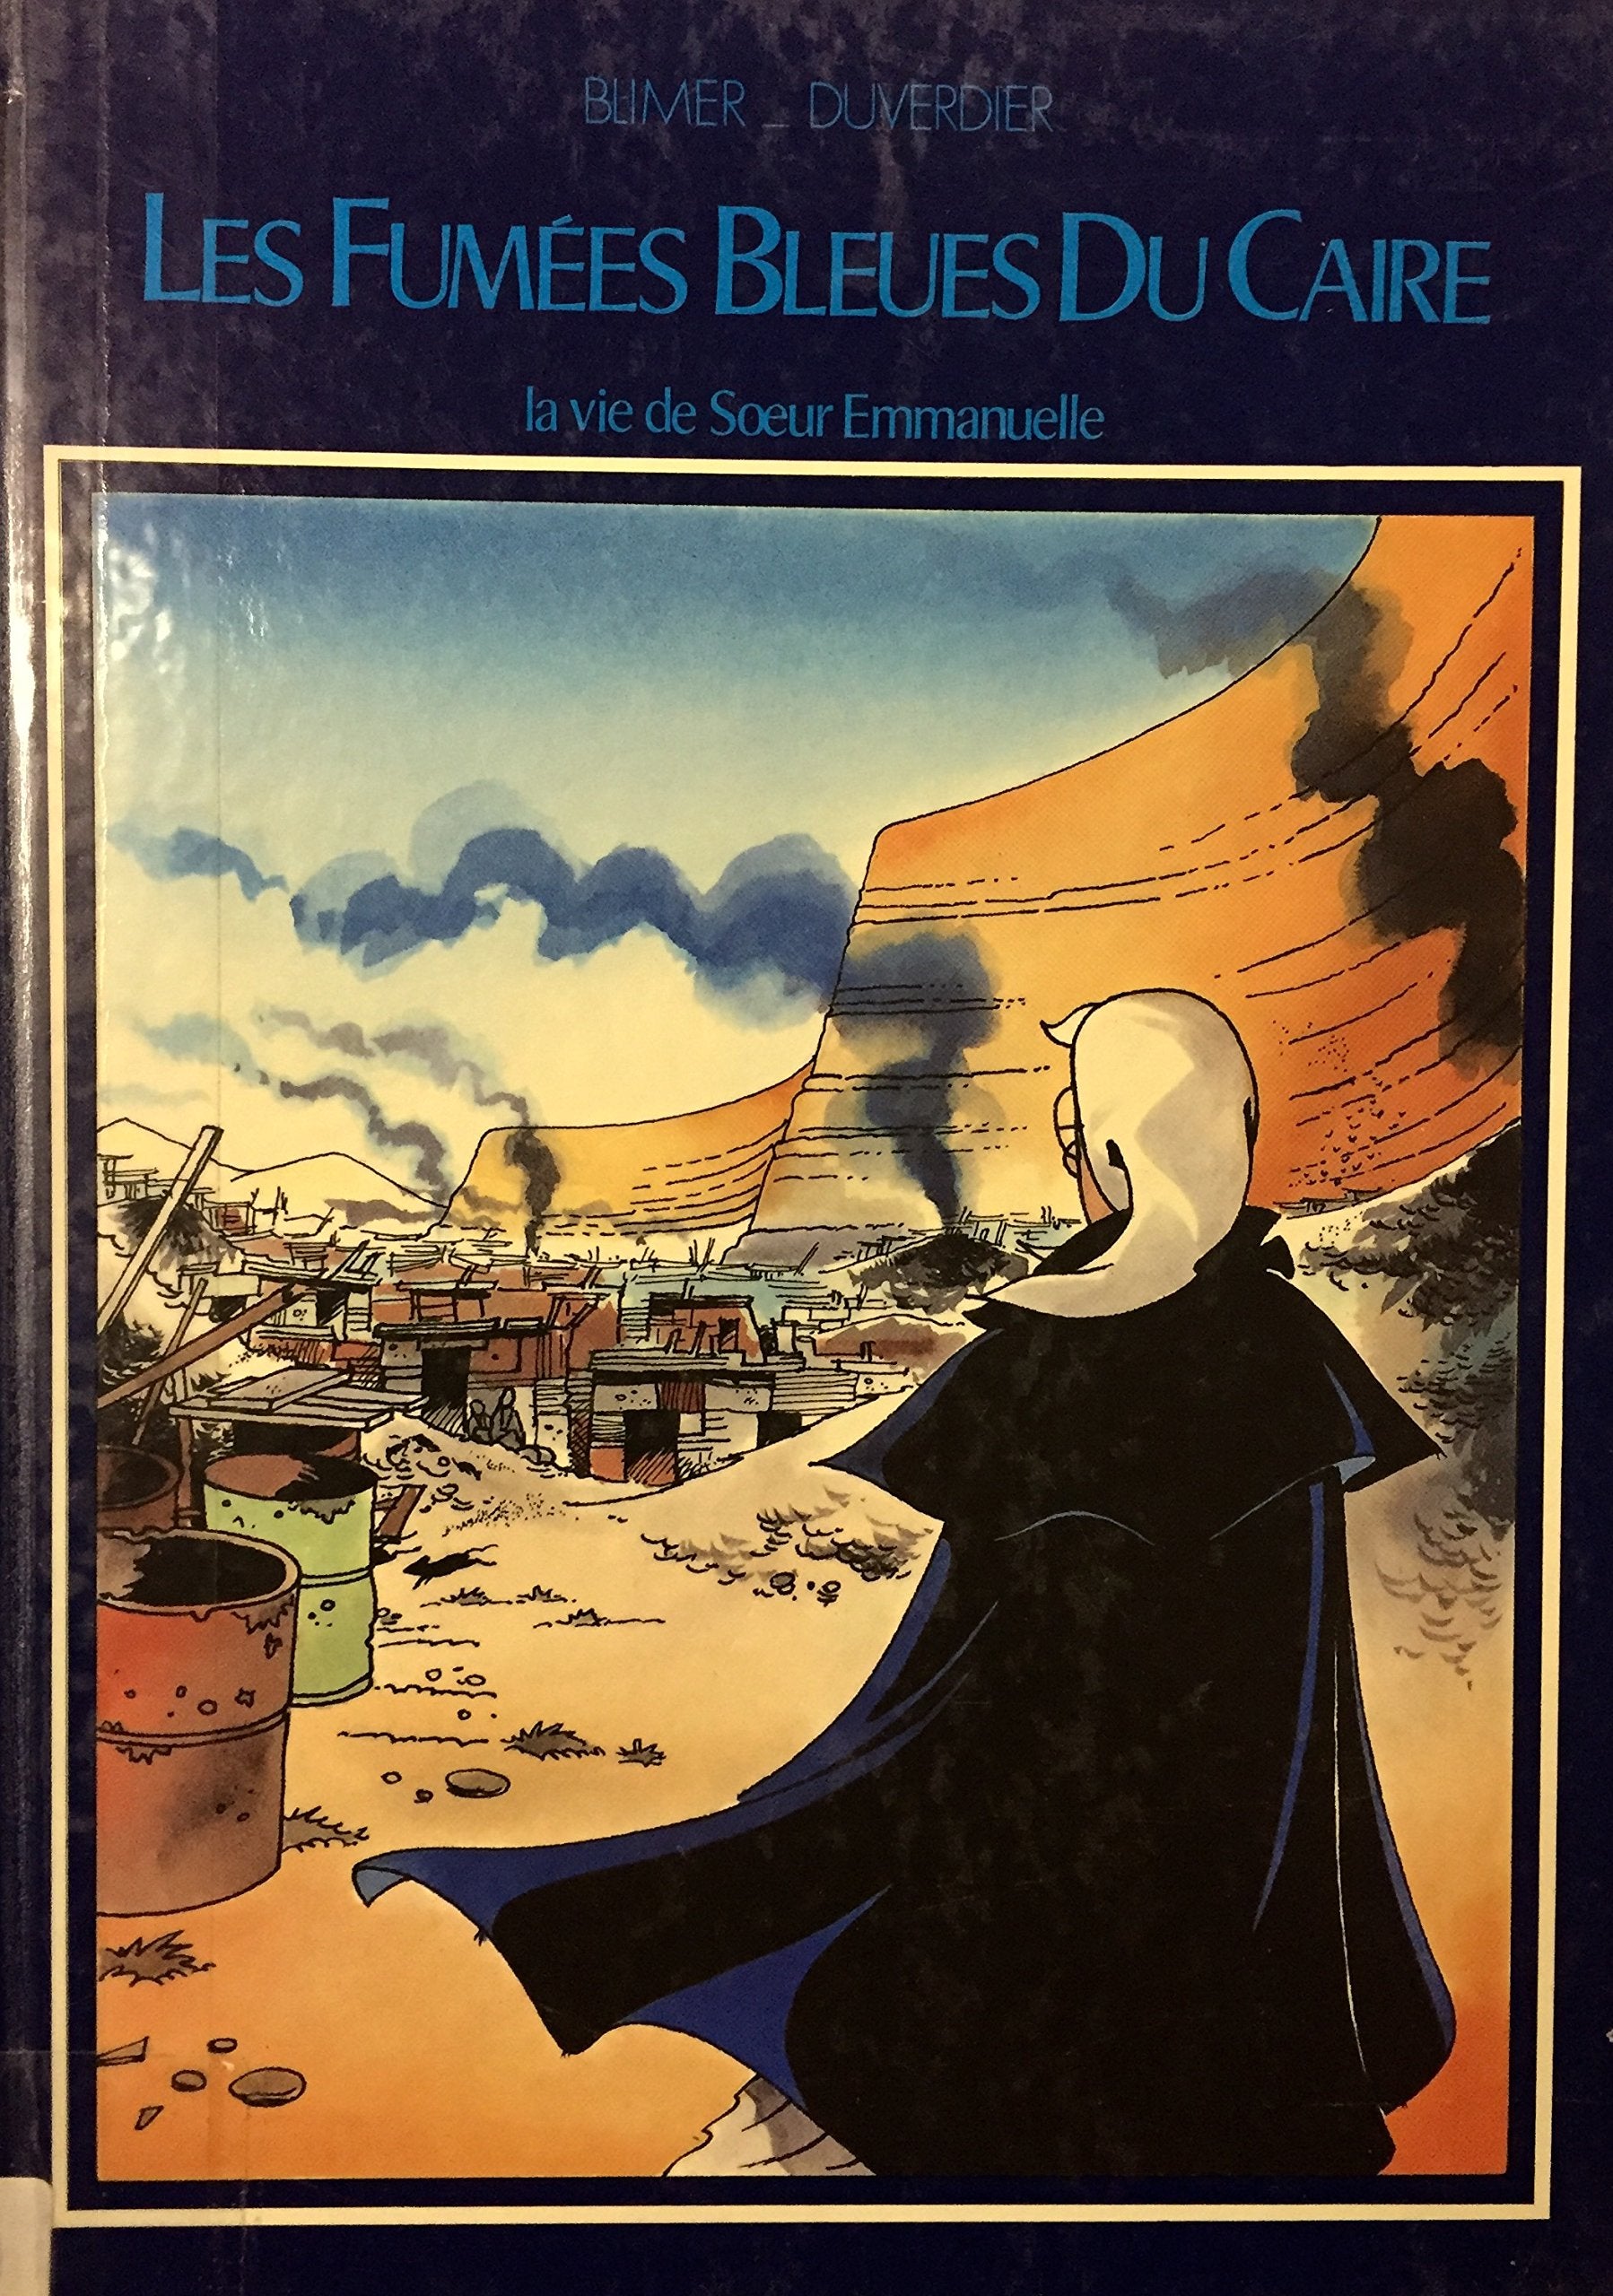 Livre ISBN 2950235417 Les fumées bleues du Caire : la vie de Soeur Emmanuelle (Blimer Duverdier)